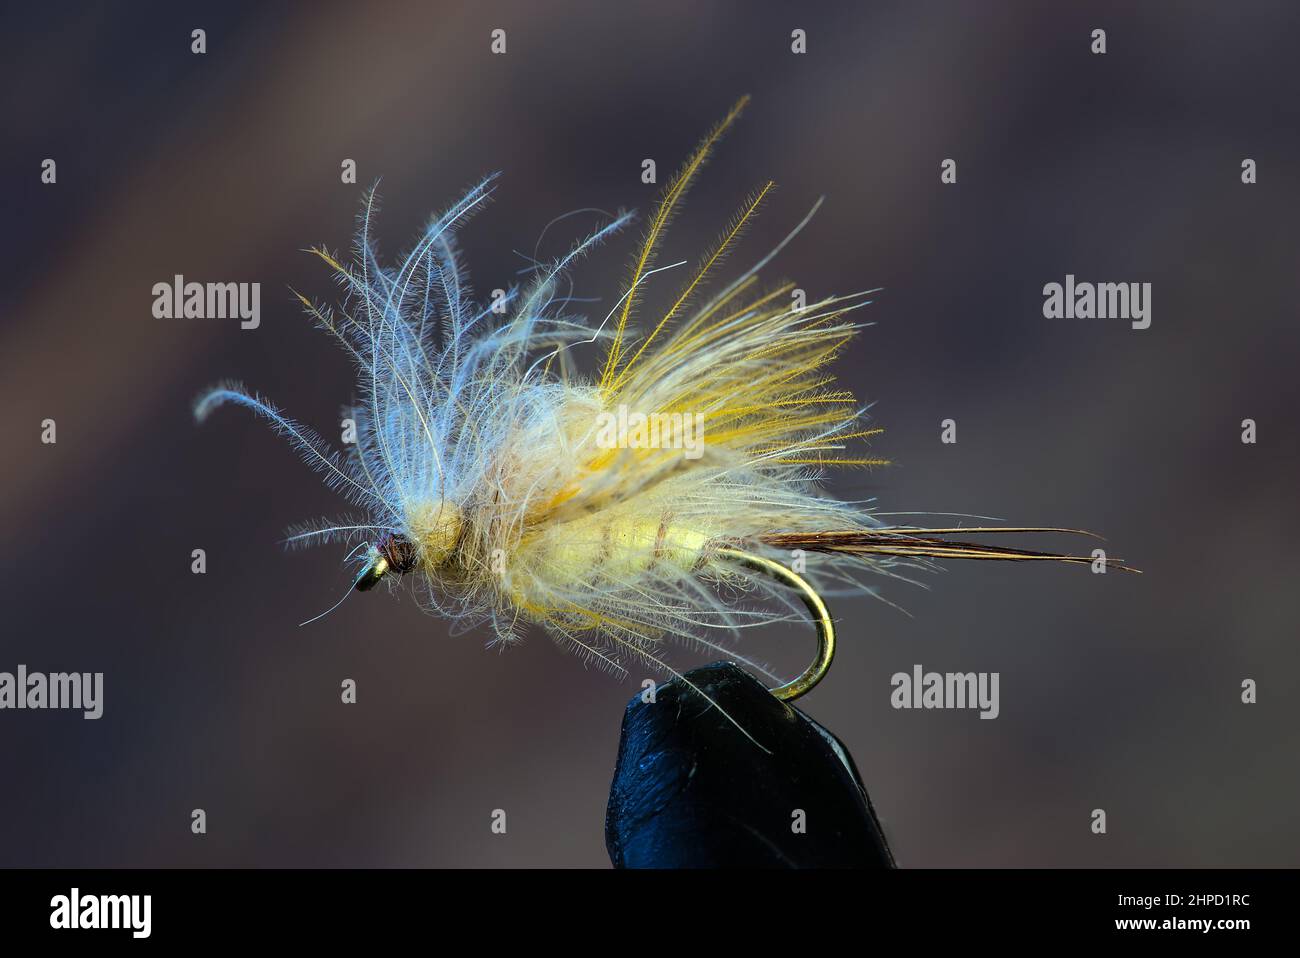 handmade fishing fly, fly tying Stock Photo